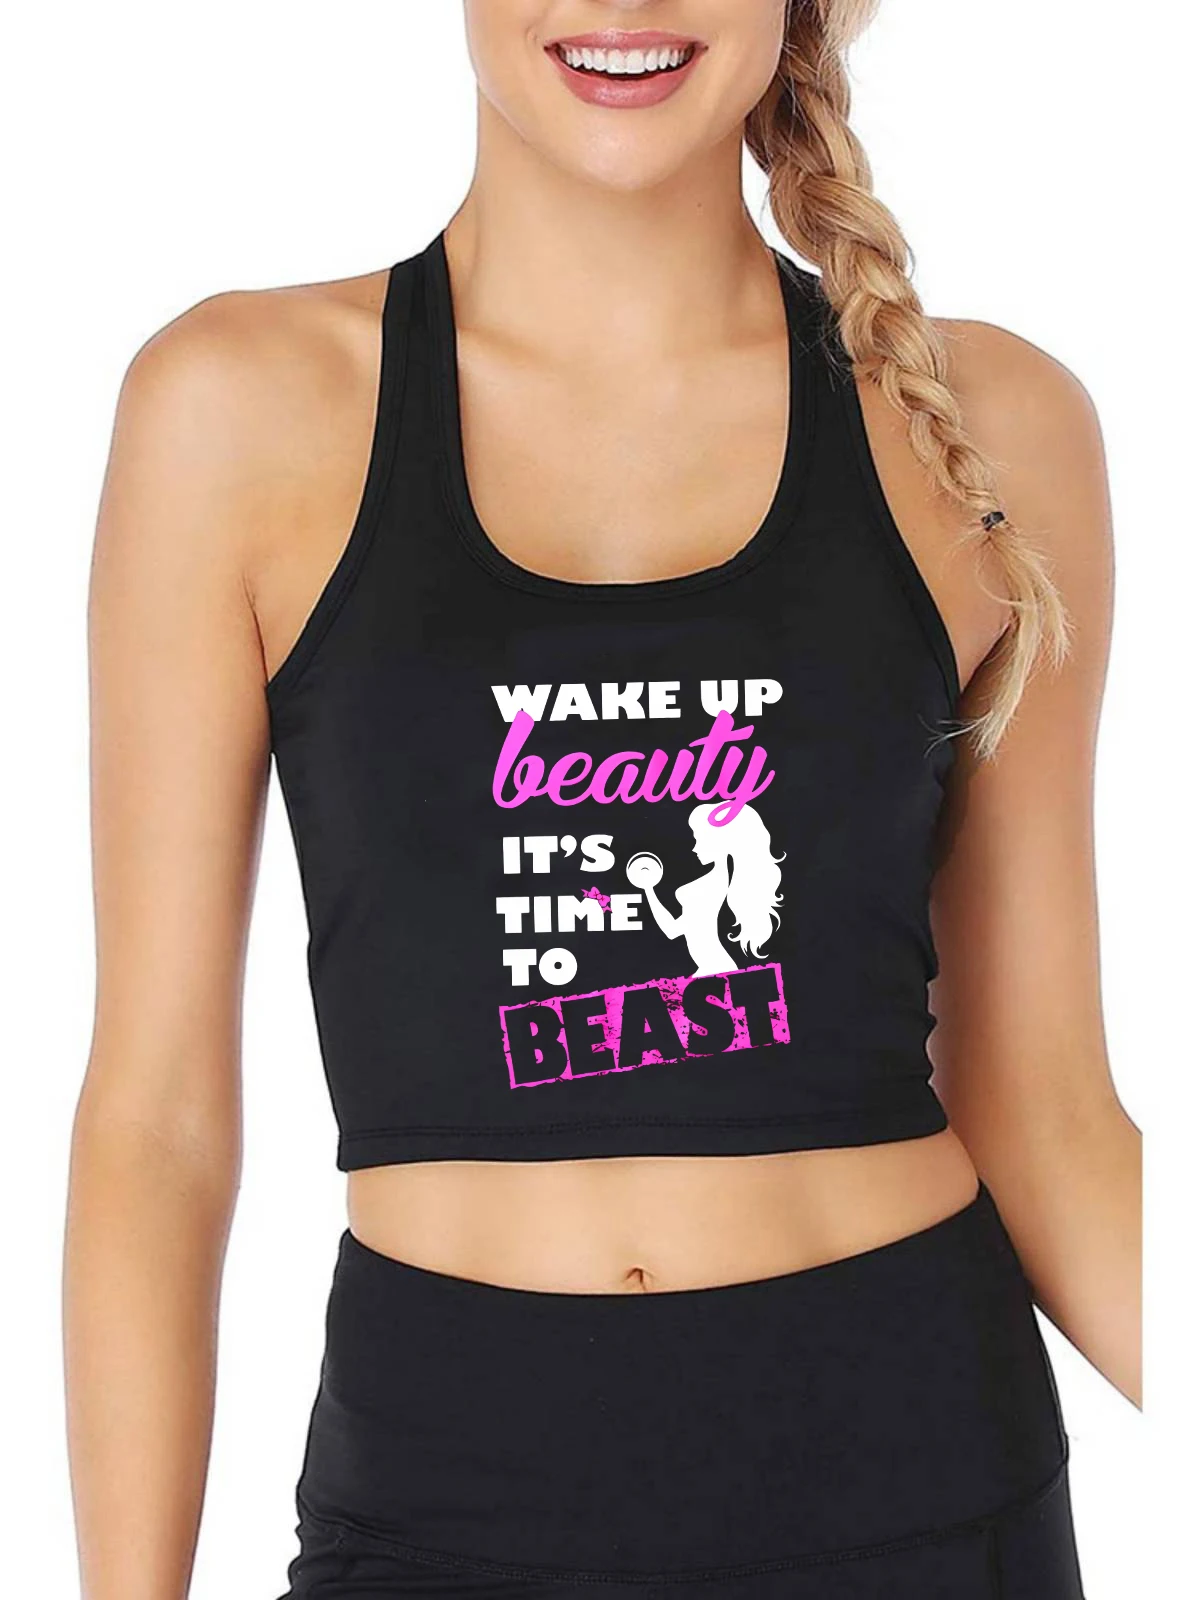 

Сексуальный укороченный топ для тренажерного зала с надписью «Wake up beauty to time to beast», женские спортивные майки для фитнеса и тренировок, хлопковая дышащая кофта